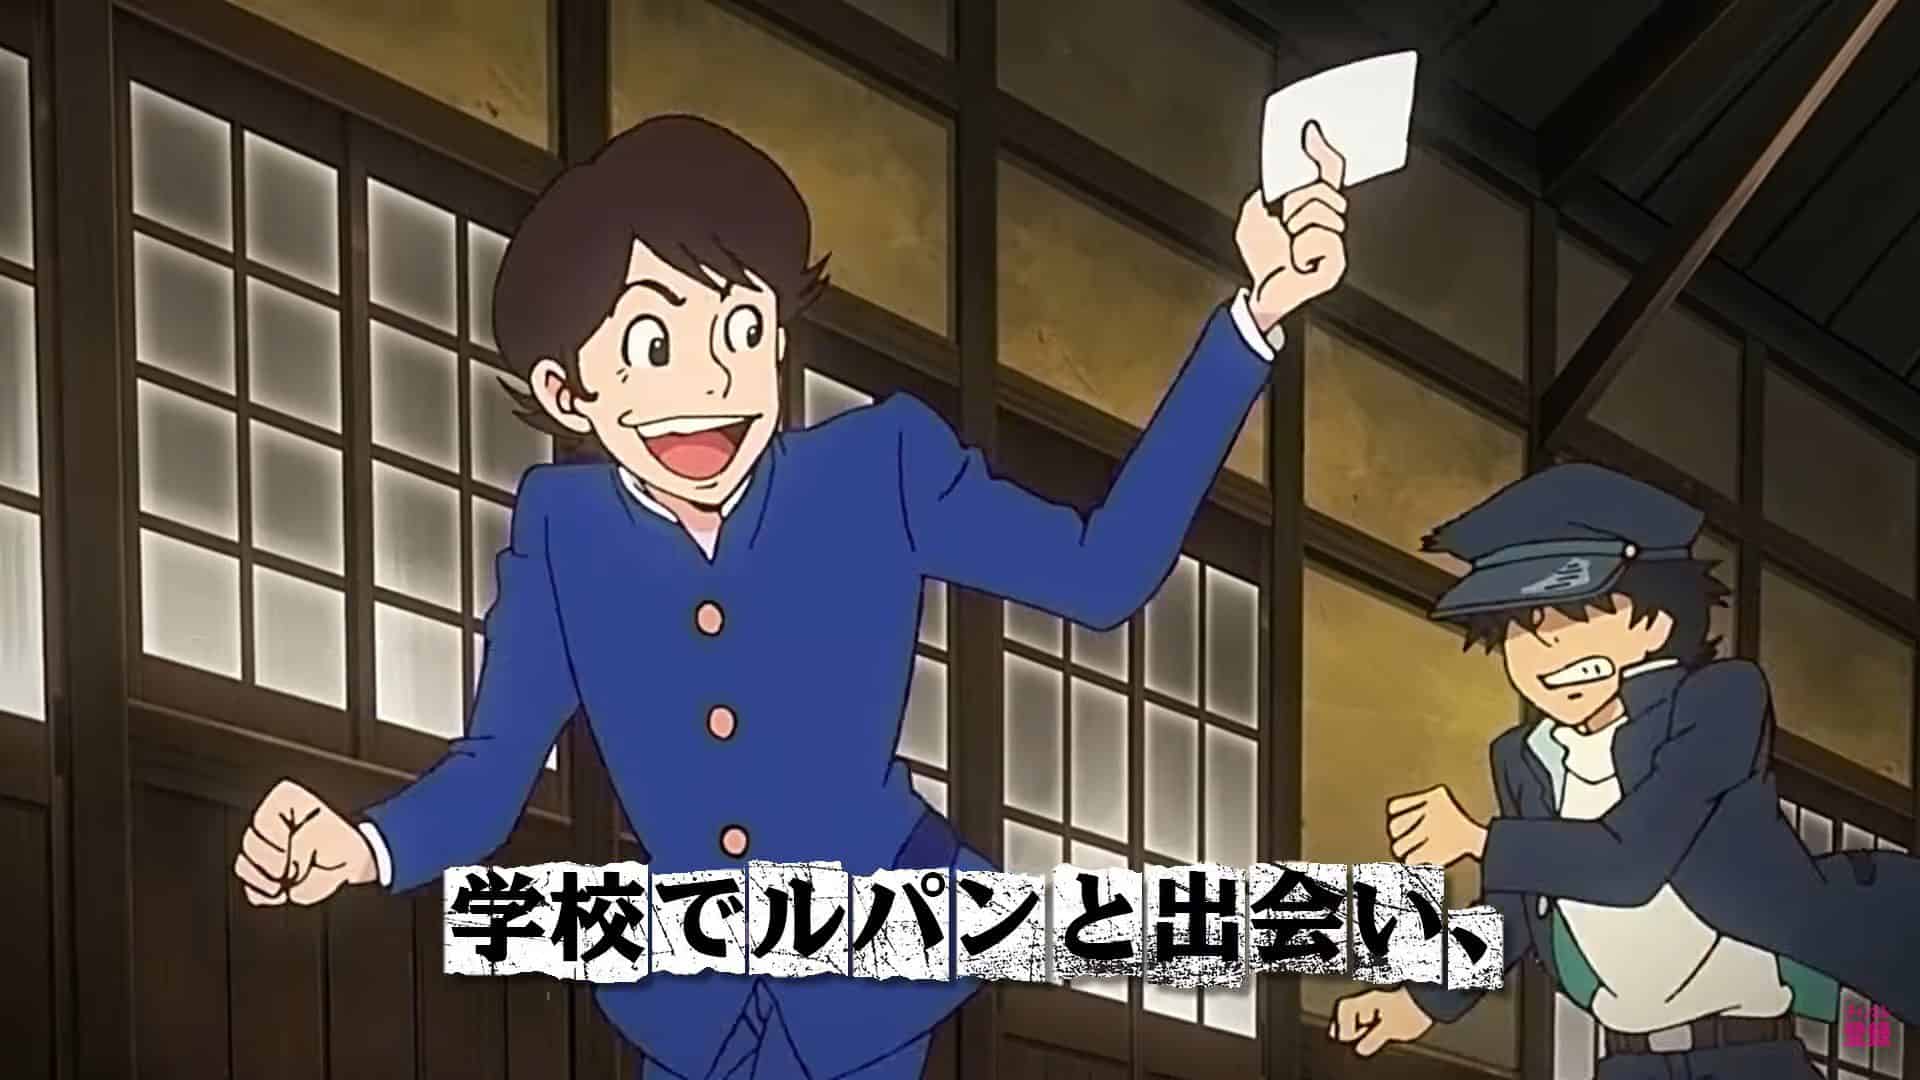 Detalles de la fecha de lanzamiento del episodio 4 de Lupin Zero